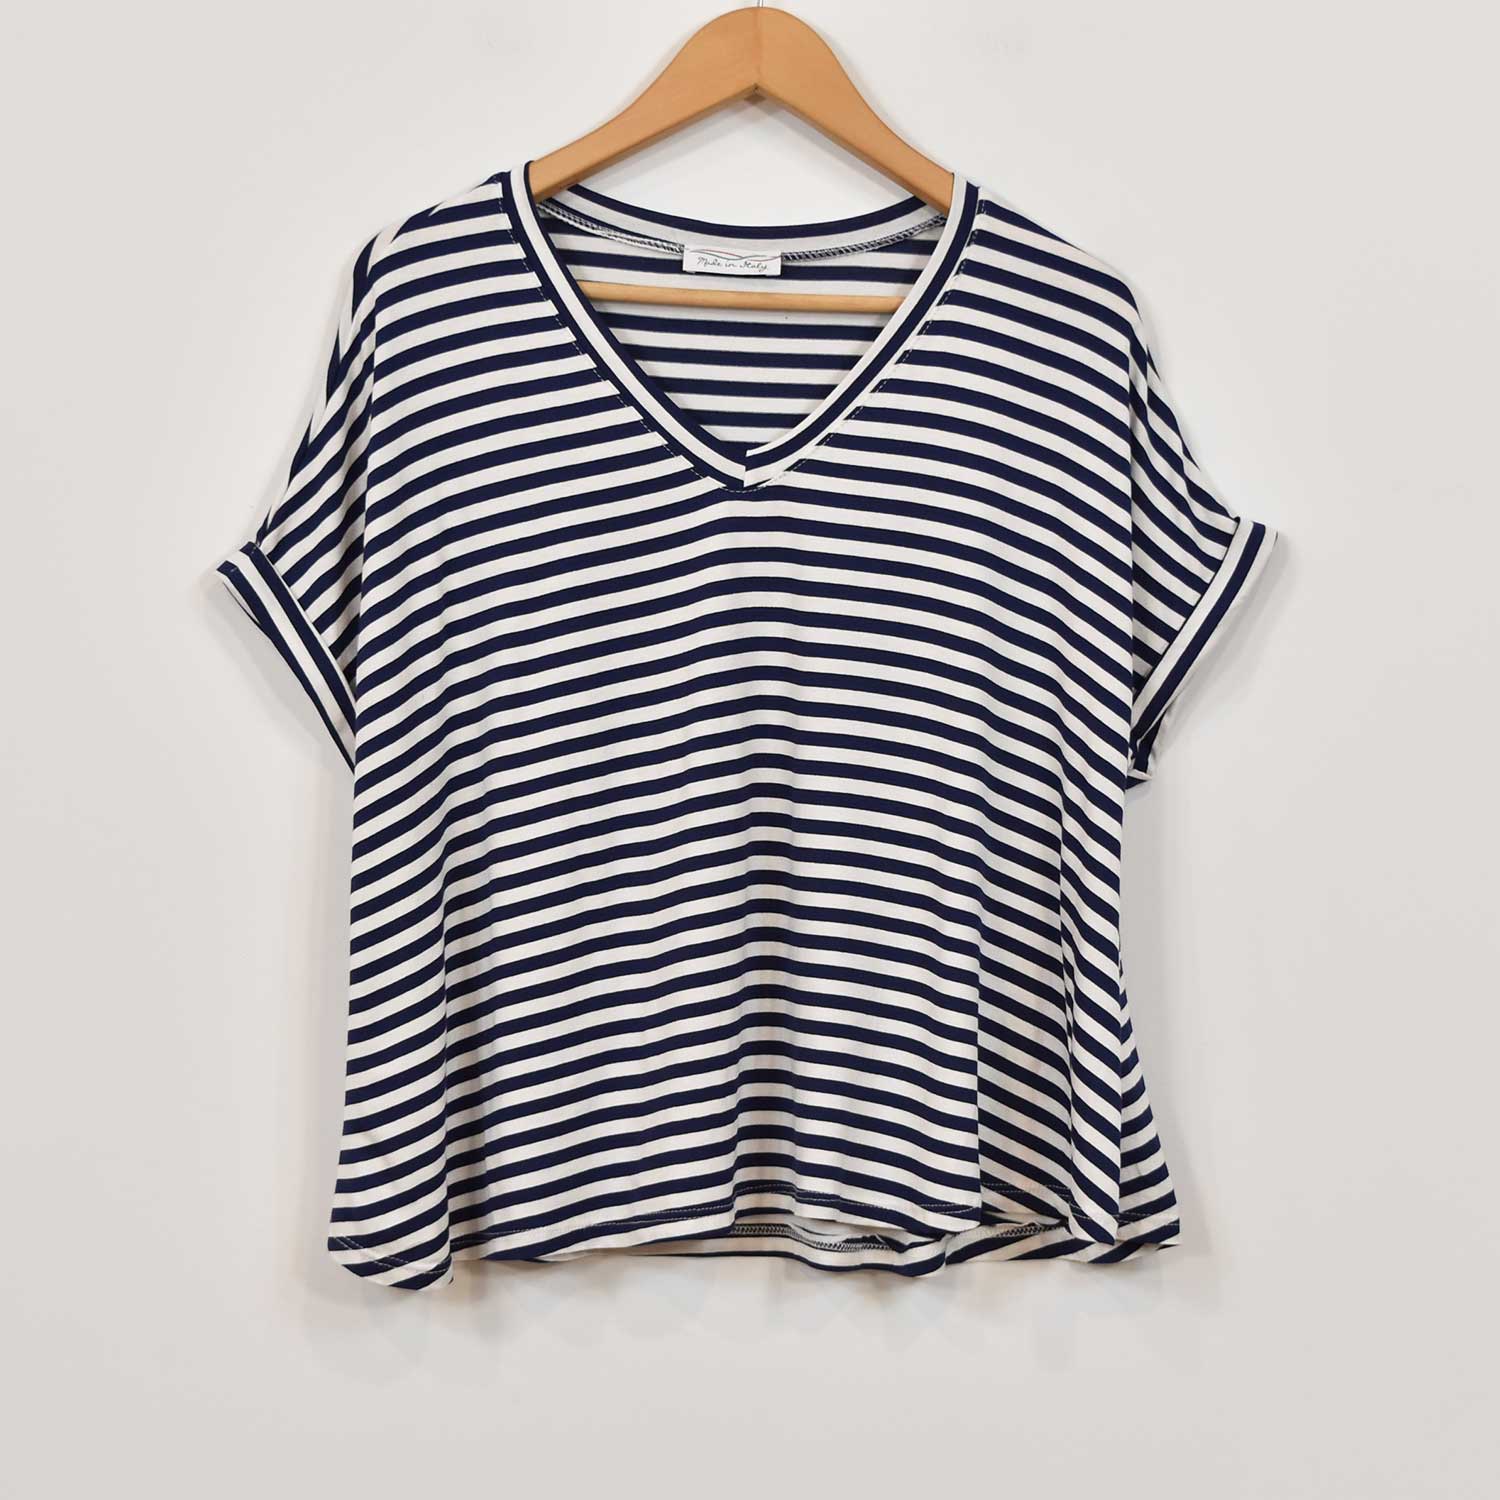 Camiseta pico rayas oversize marino